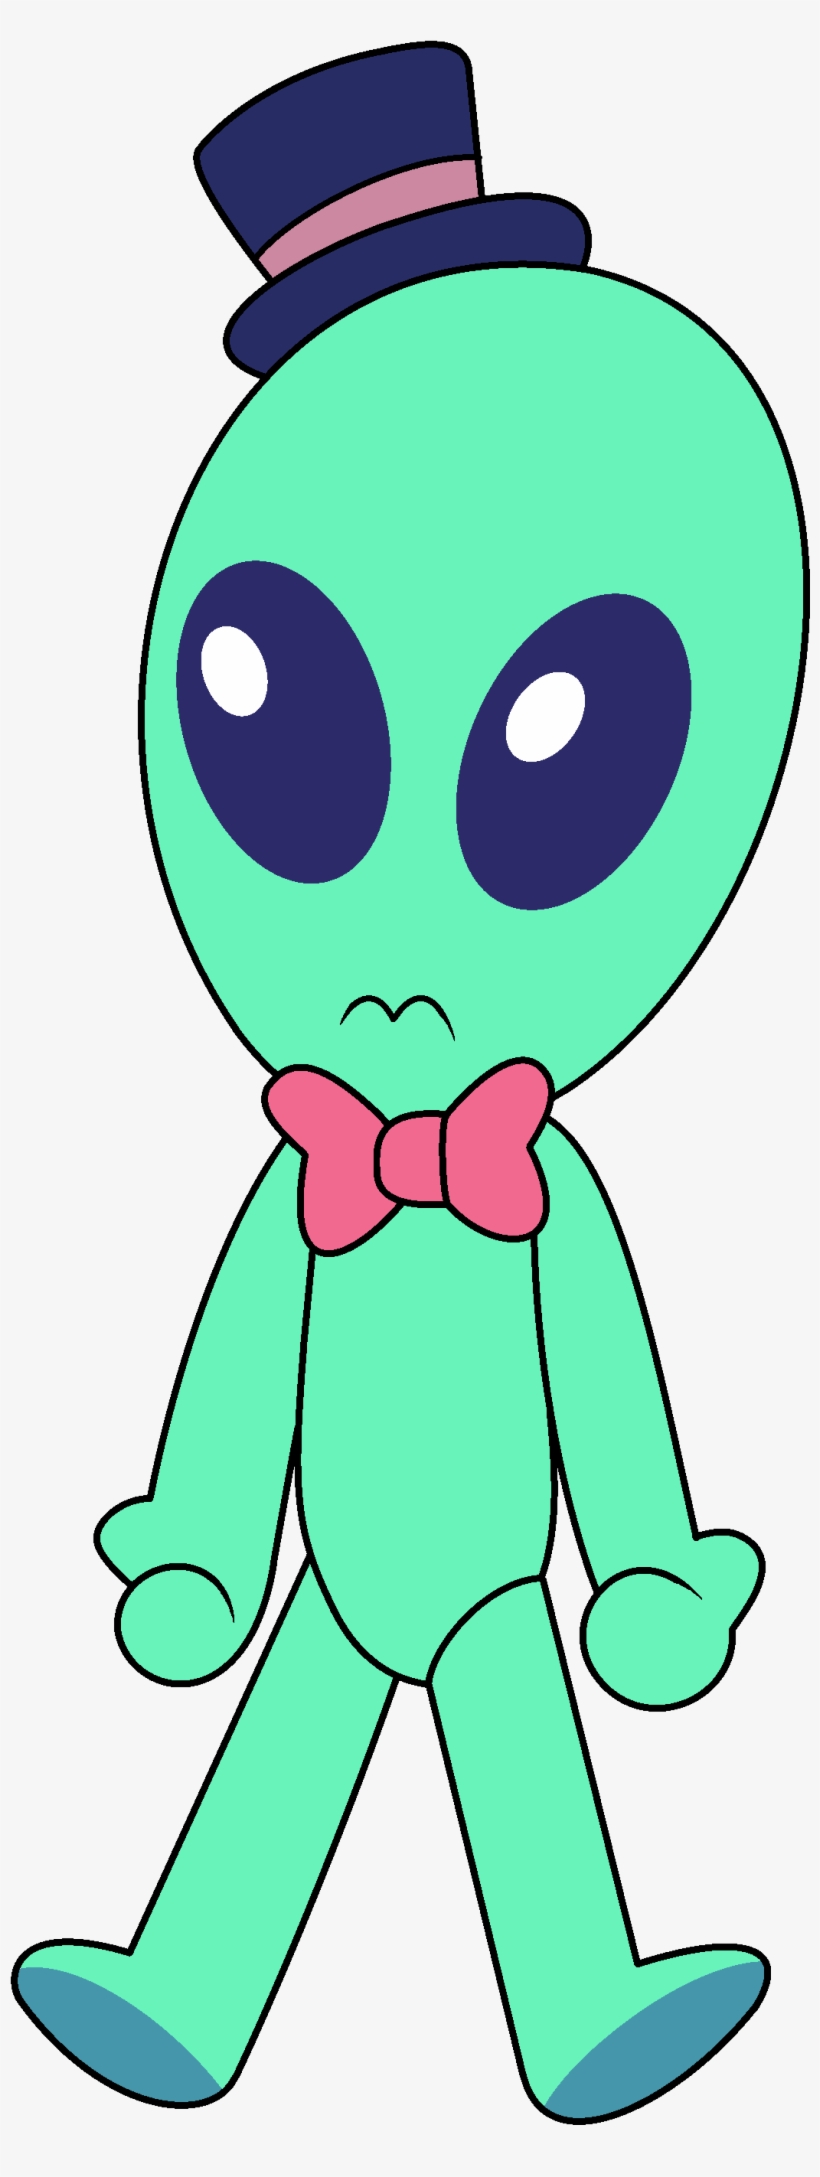 Top Hat Alien - Peridot Steven Universe Alien, transparent png #94826